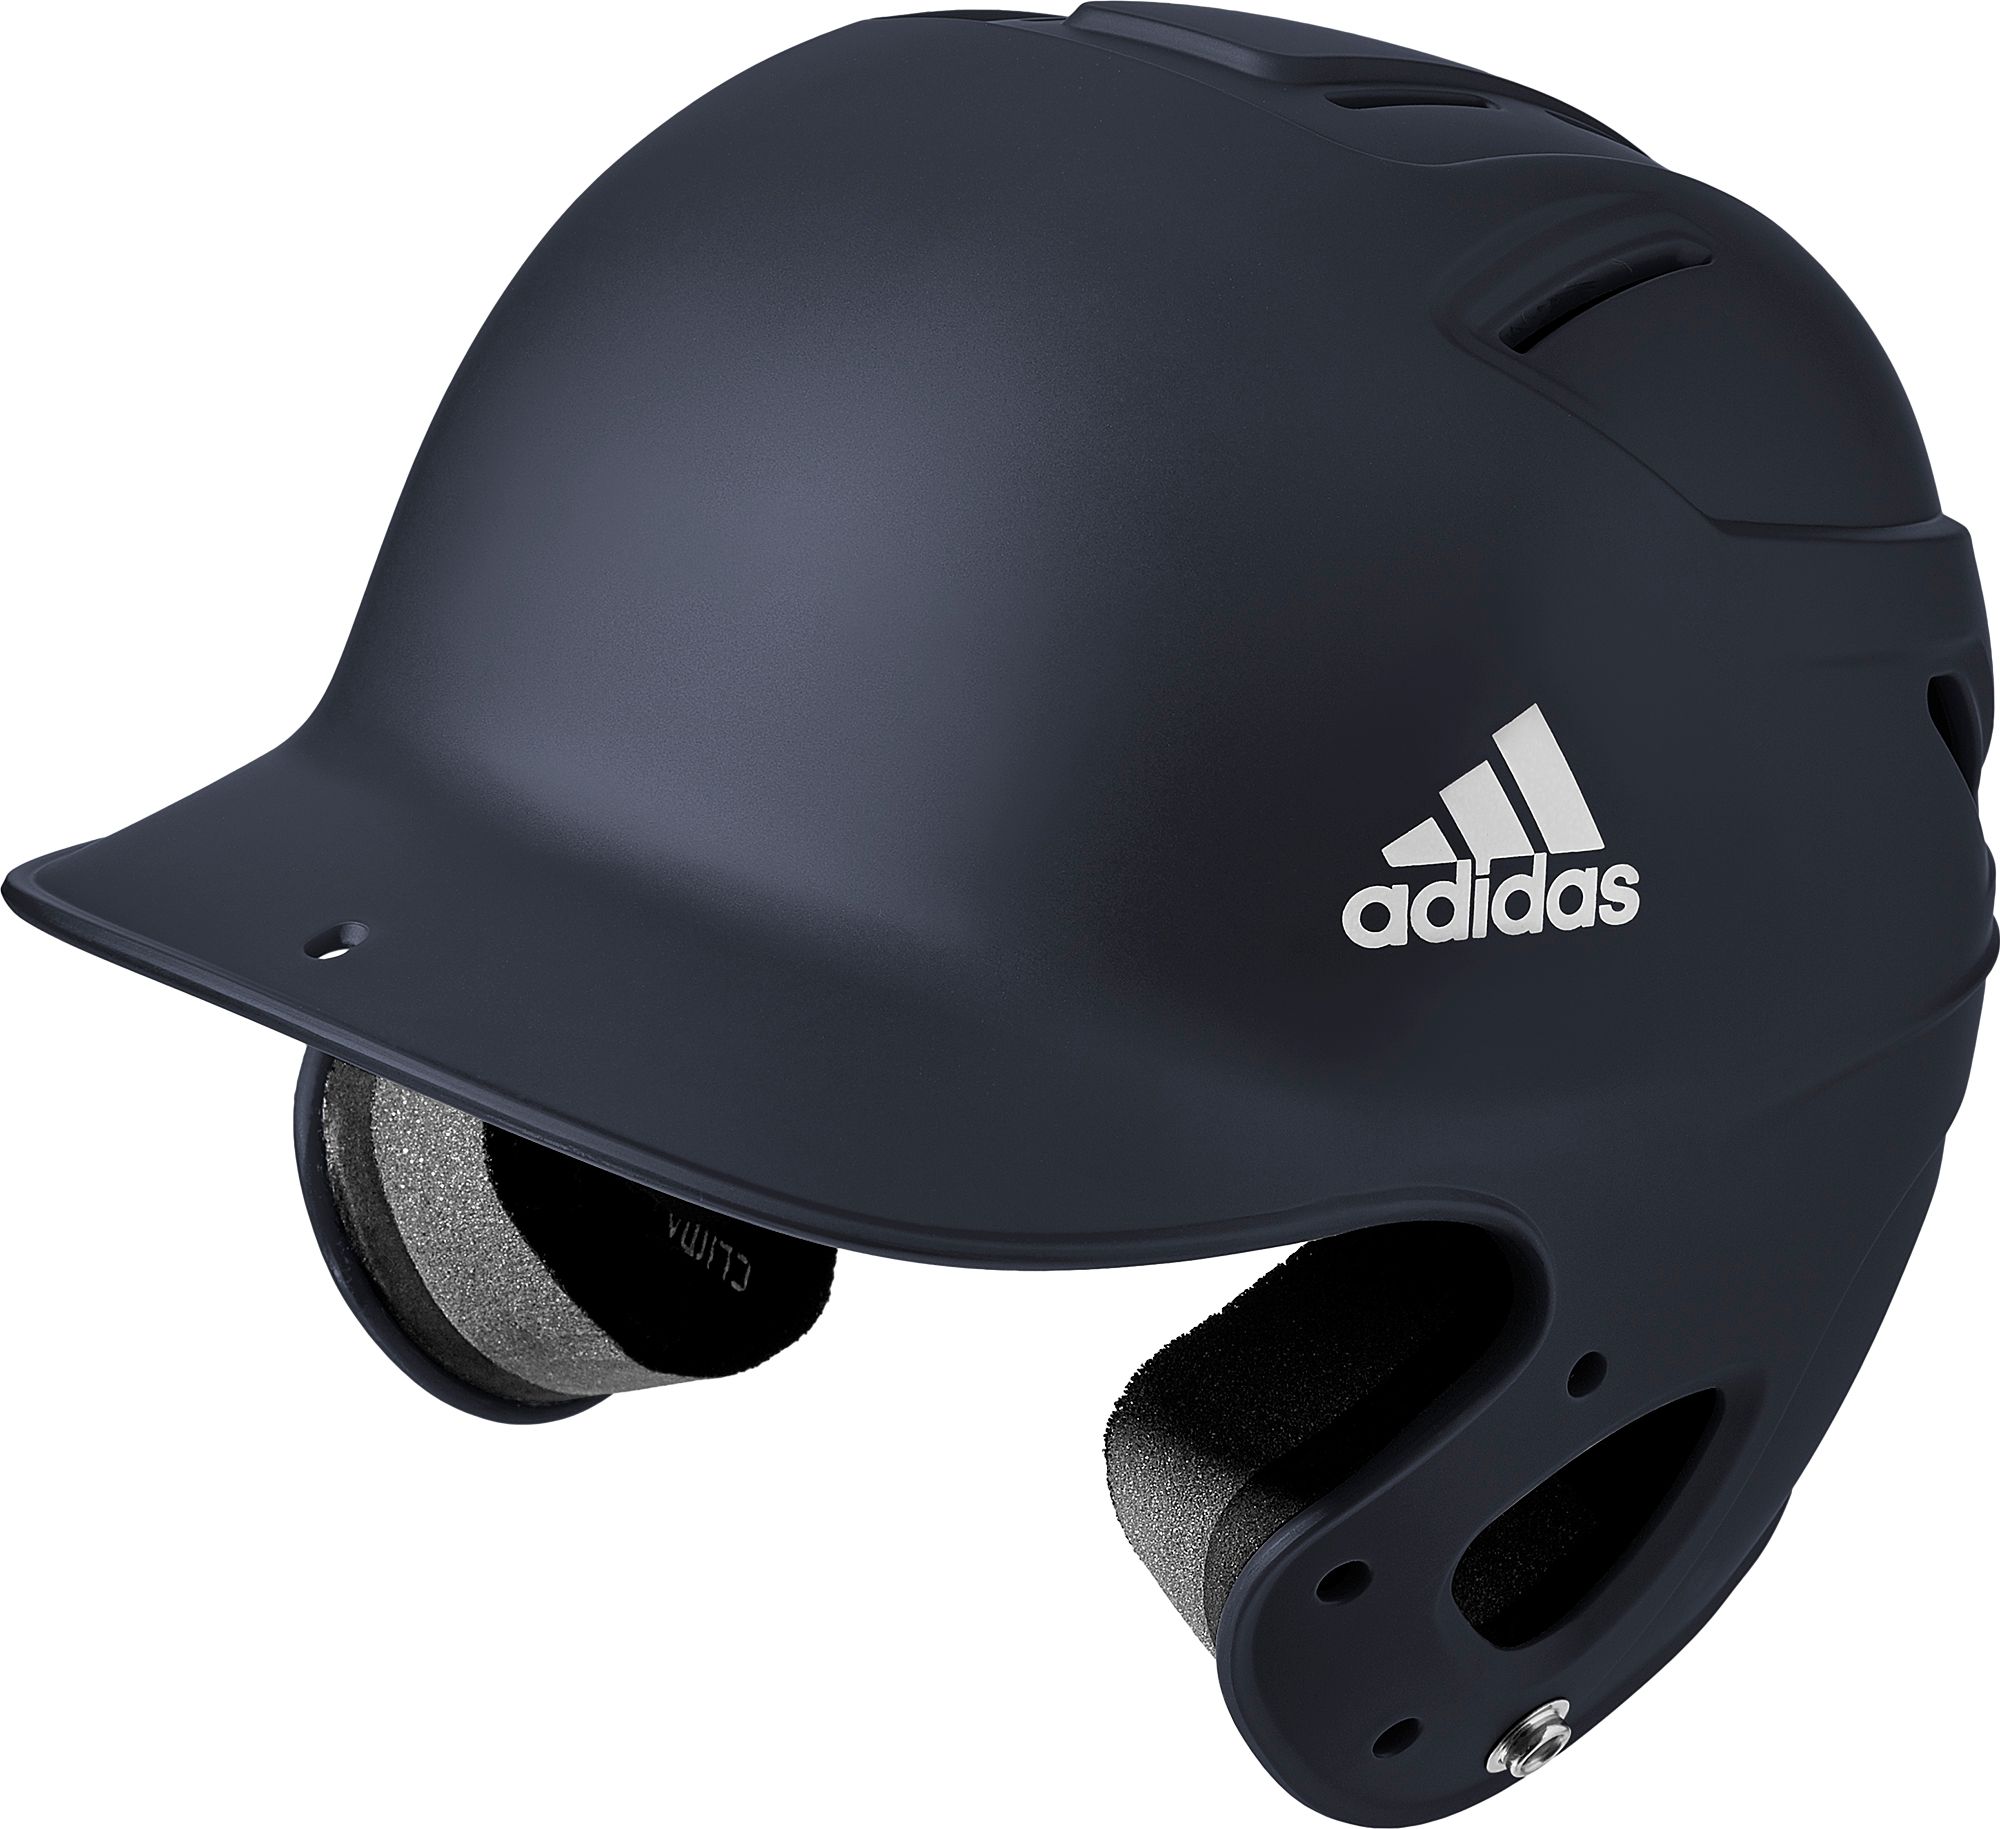 adidas batting helmet hardware kit